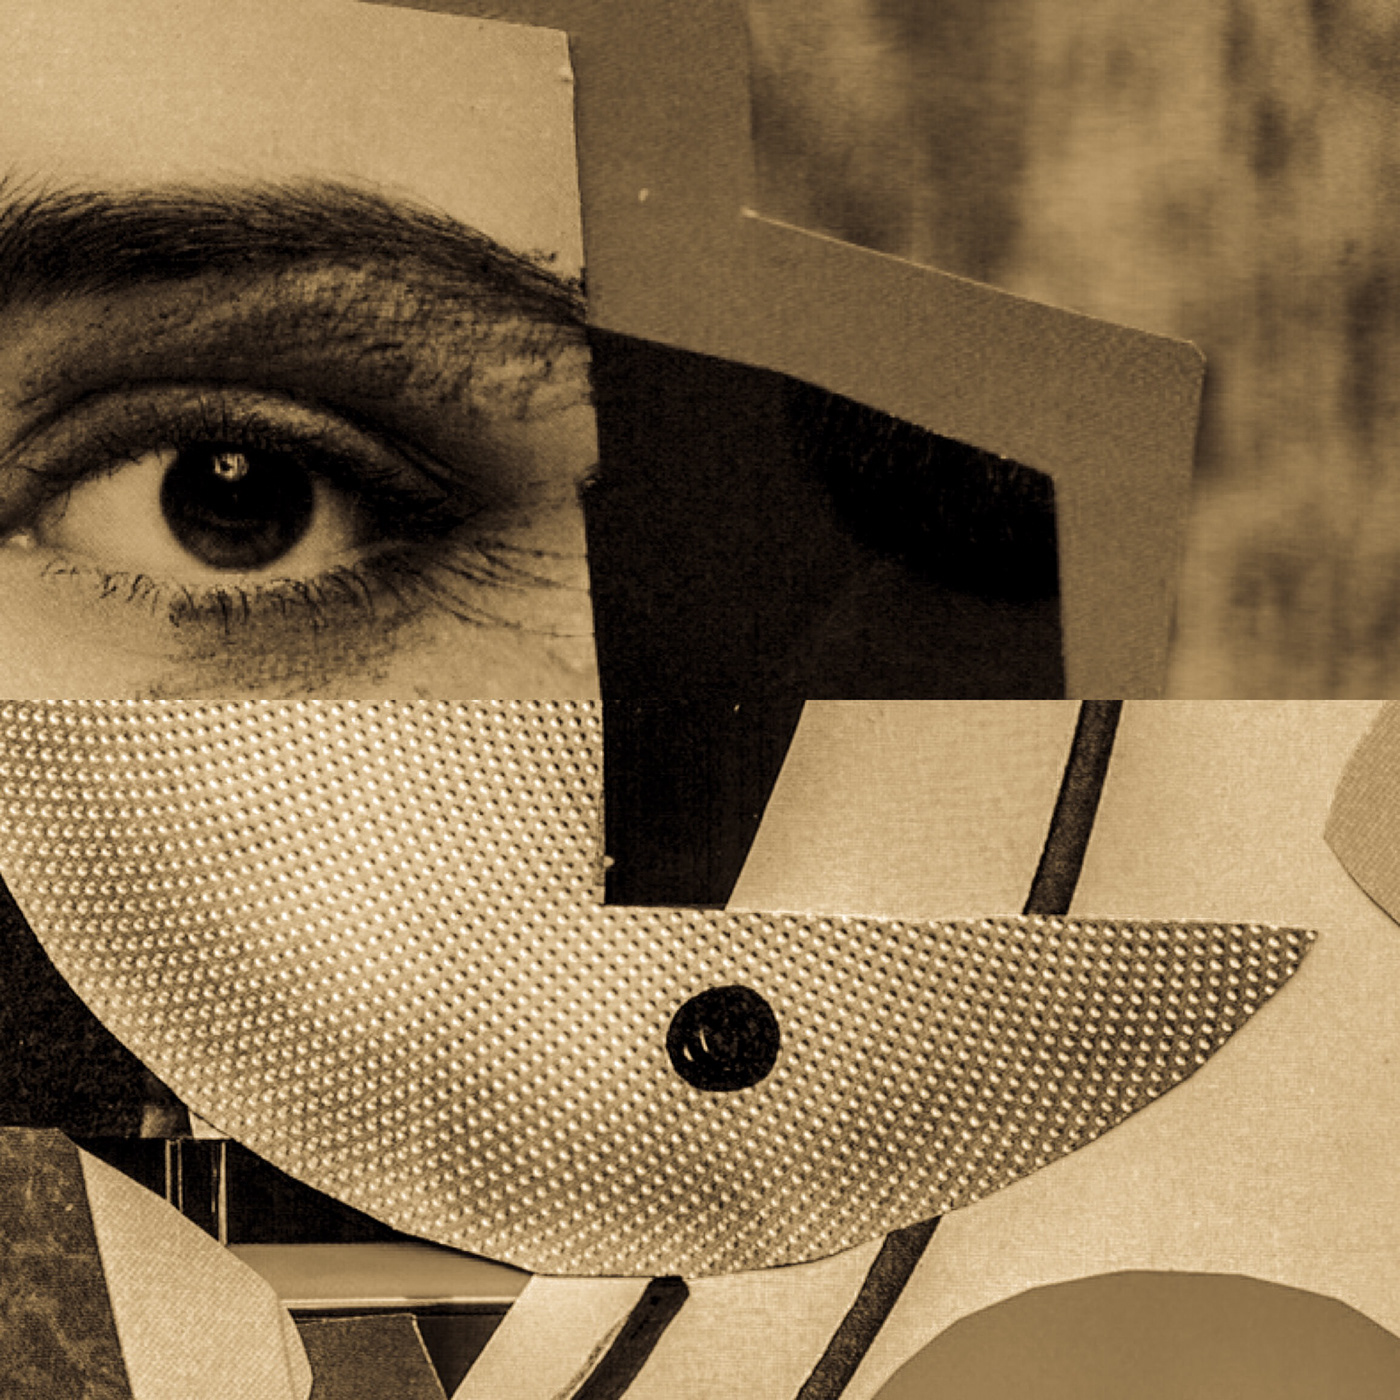 untitled collage digital pop poster Fashion  eye face tags Kommas Dada